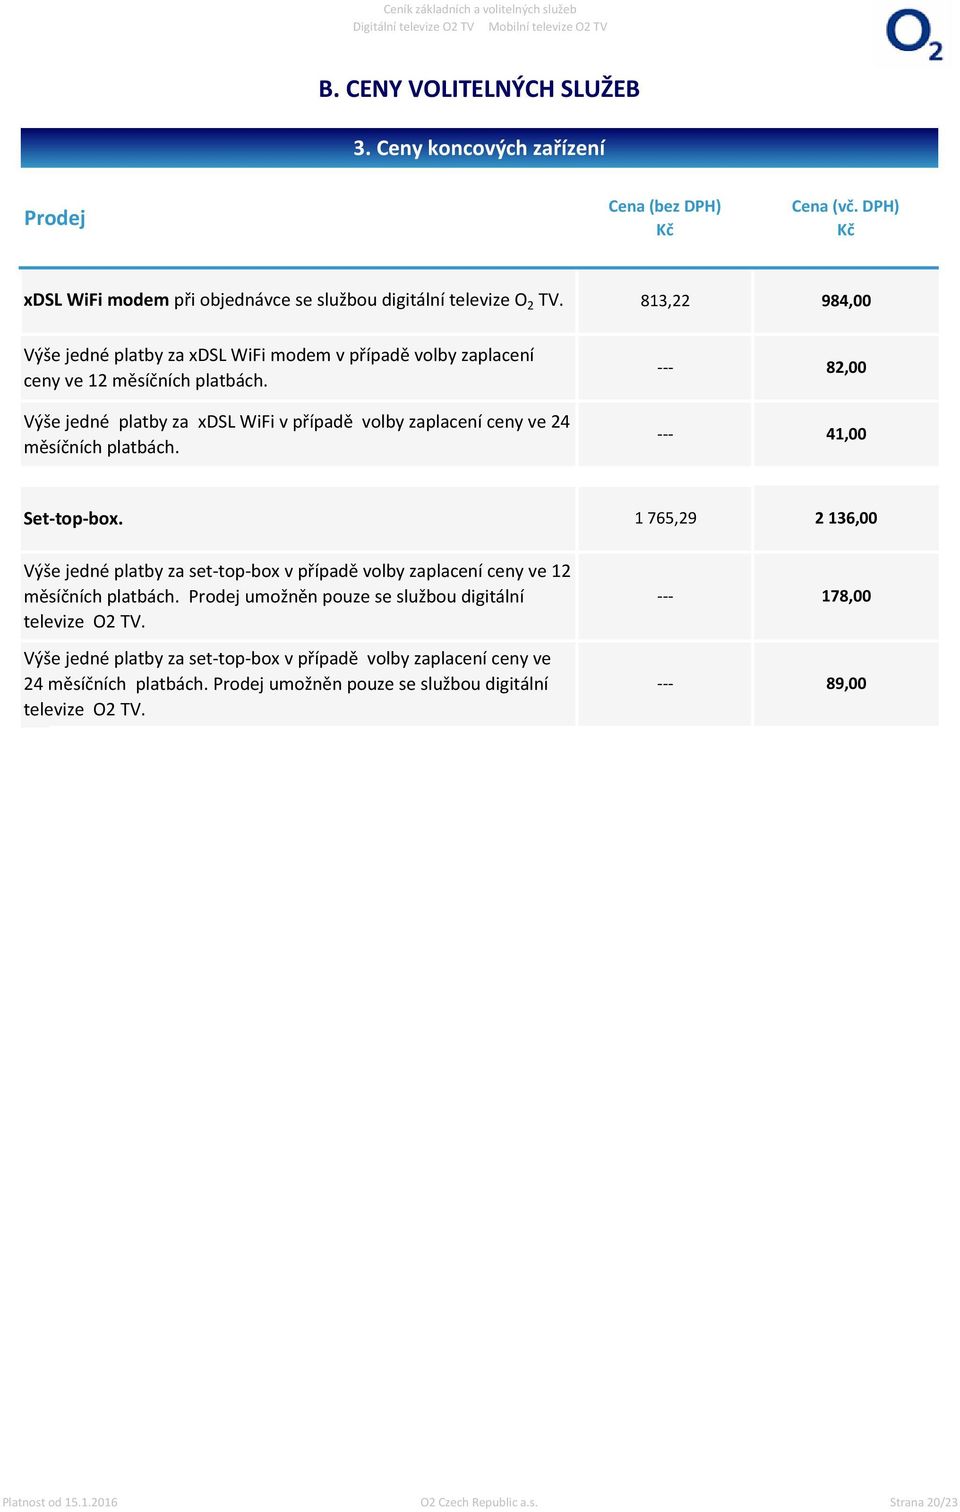 Výše jedné platby za xdsl WiFi v případě volby zaplacení ceny ve 24 měsíčních platbách. --- 82,00 --- 41,00 Set-top-box.